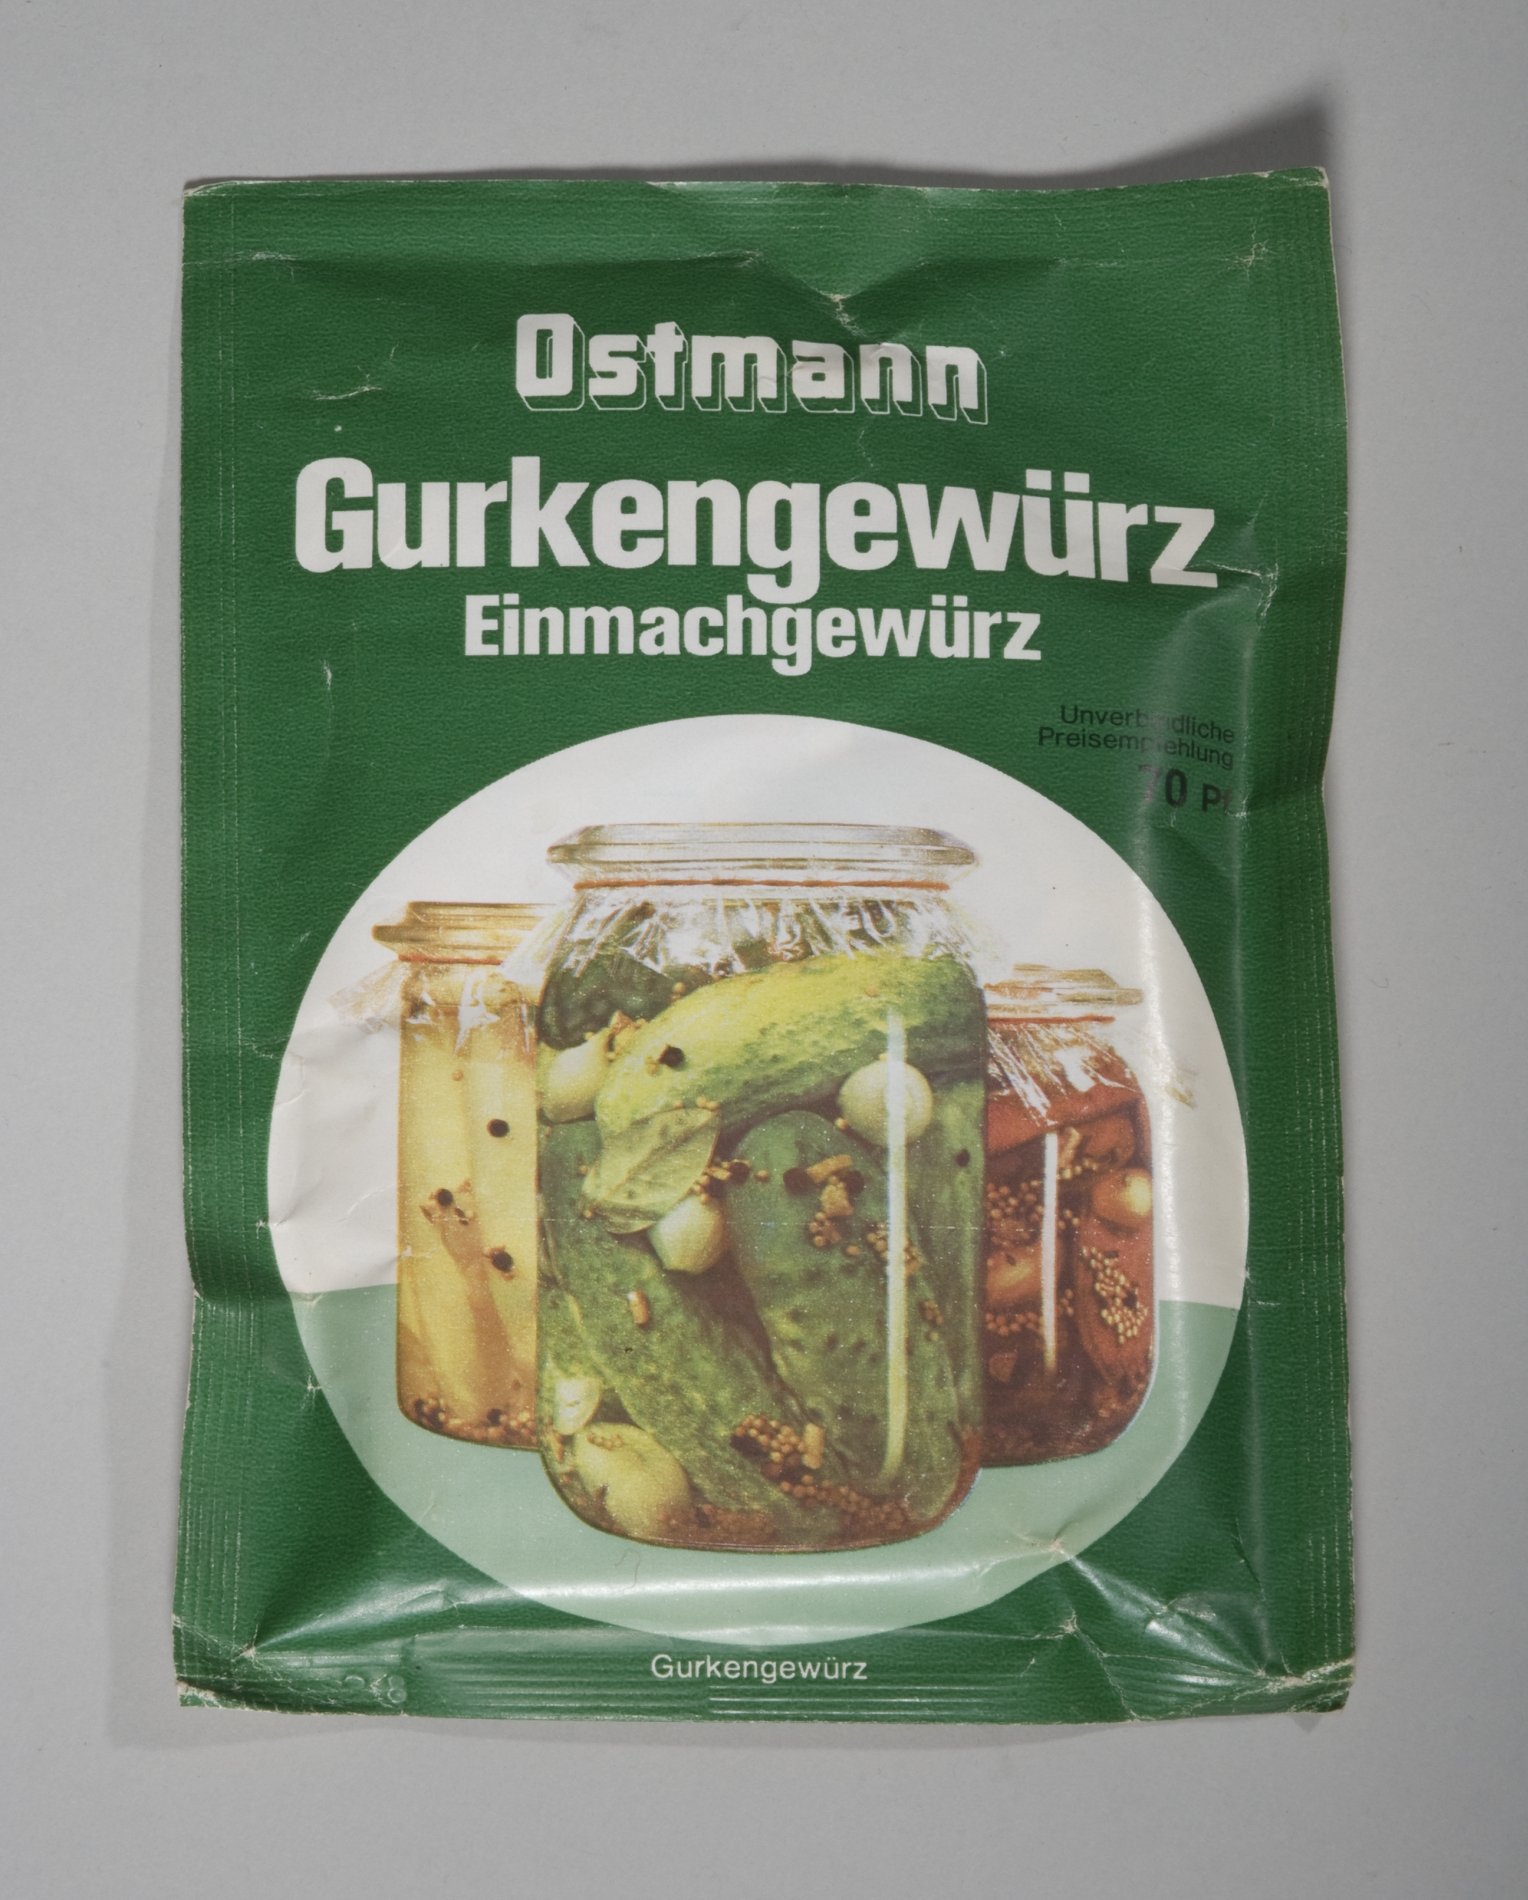 Verpackung Gurkengewürz "Ostmann" (Stiftung Domäne Dahlem - Landgut und Museum, Weiternutzung nur mit Genehmigung des Museums CC BY-NC-SA)